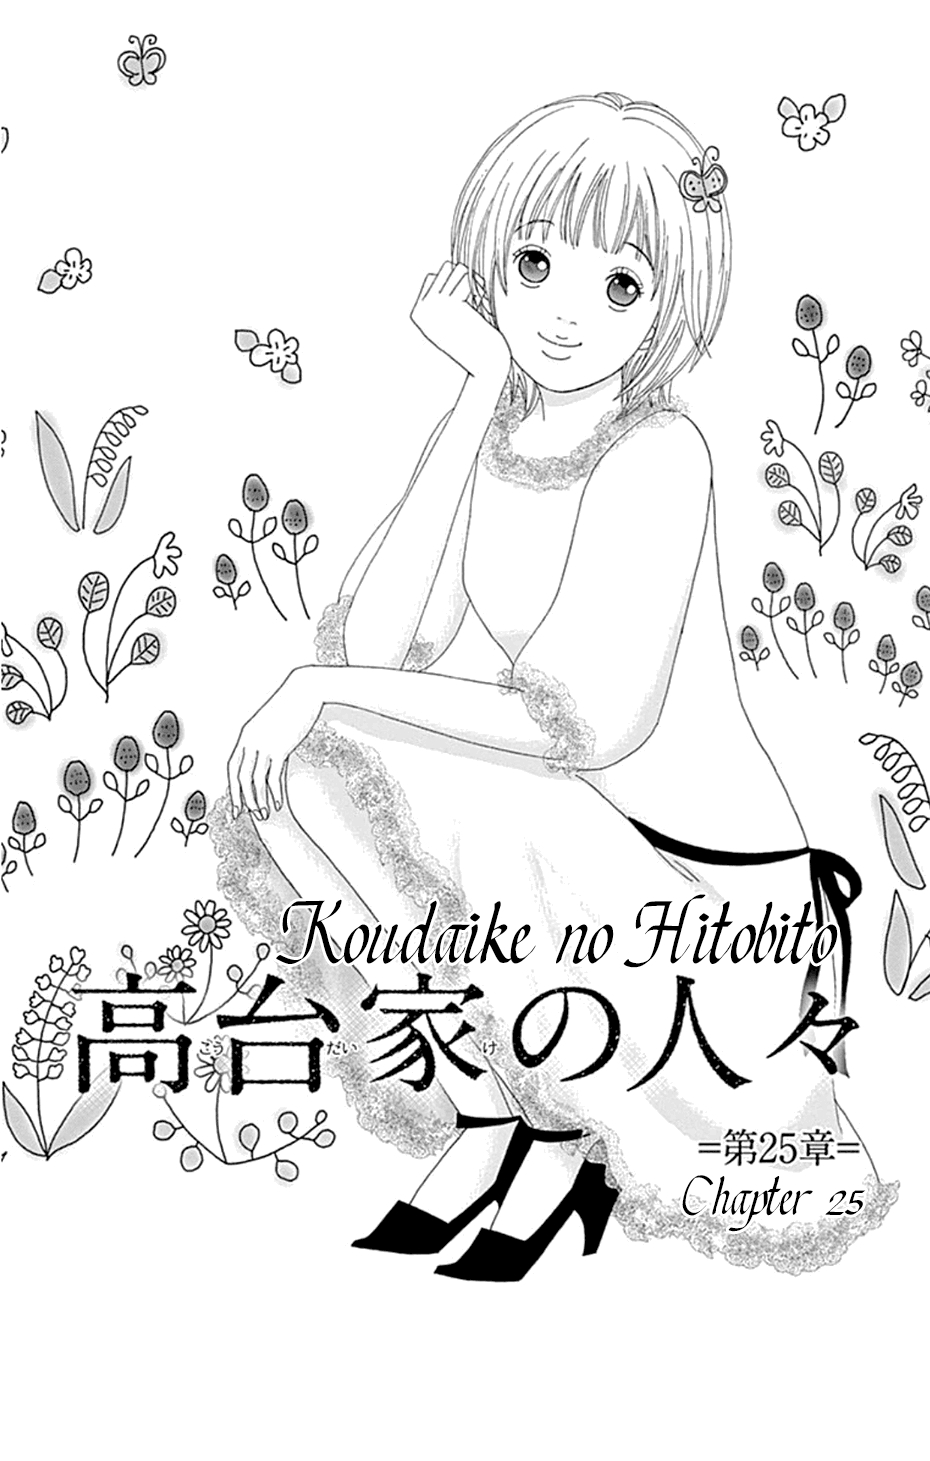 Koudaike no Hitobito Vol. 4 Ch. 25